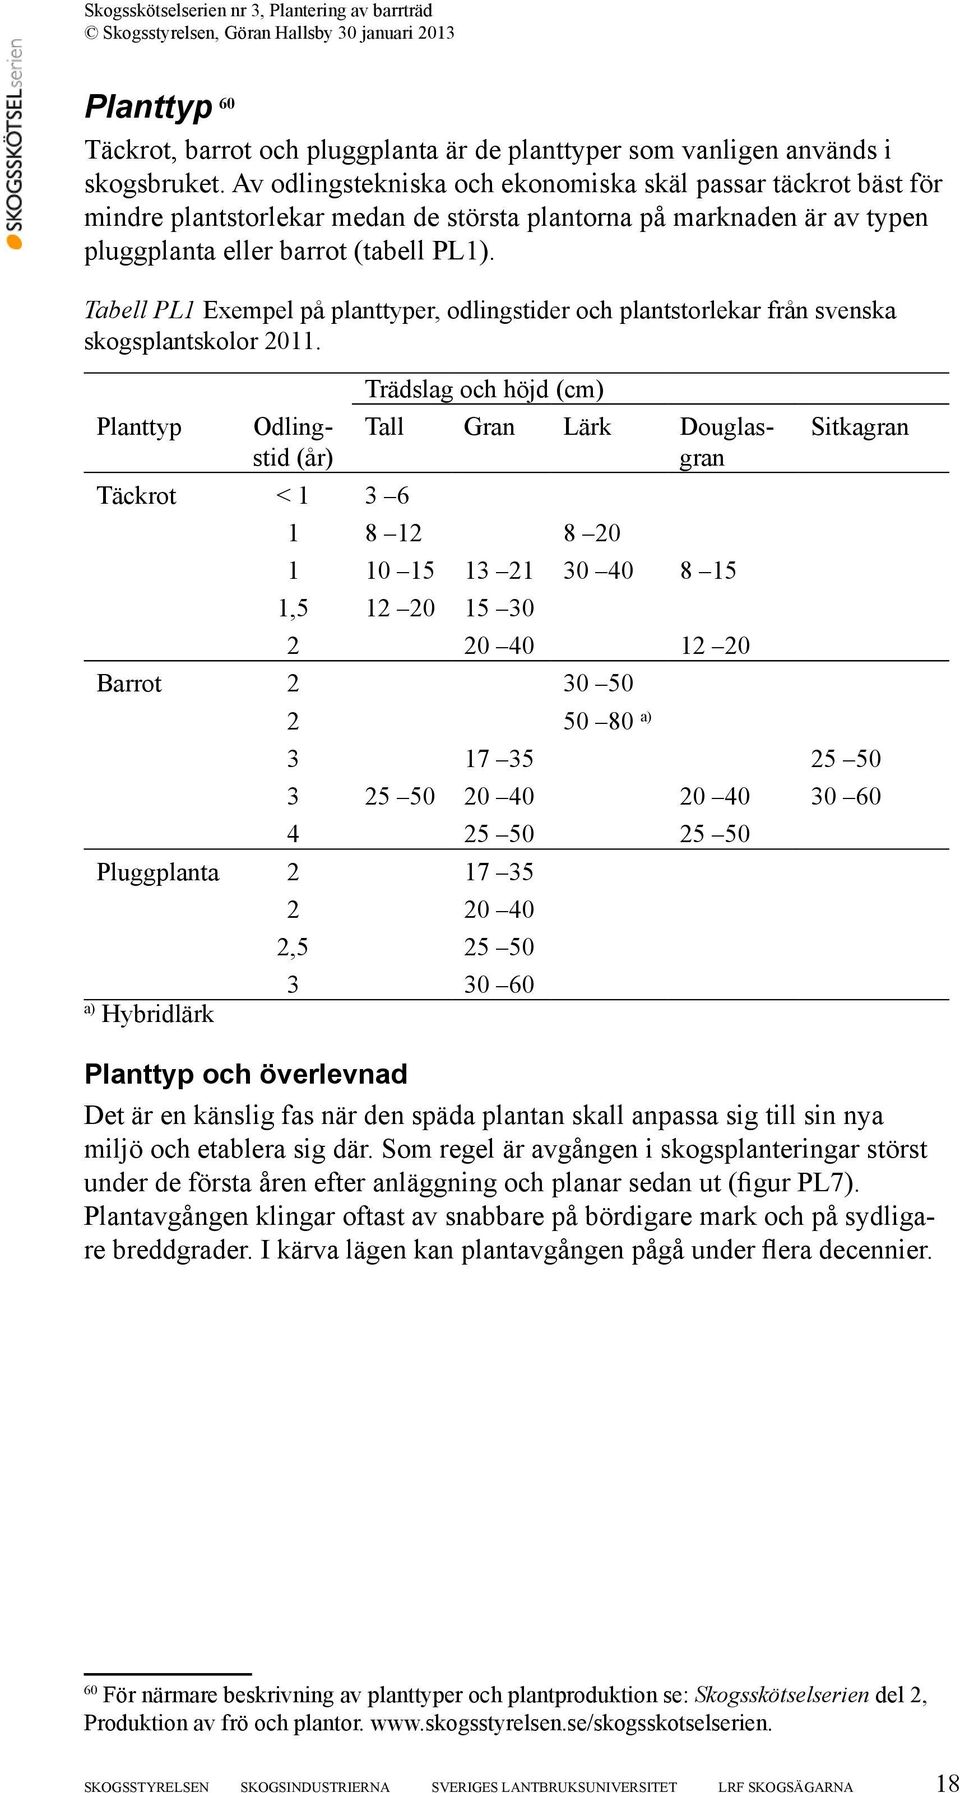 Tabell PL1 Exempel på planttyper, odlingstider och plantstorlekar från svenska skogsplantskolor 2011.